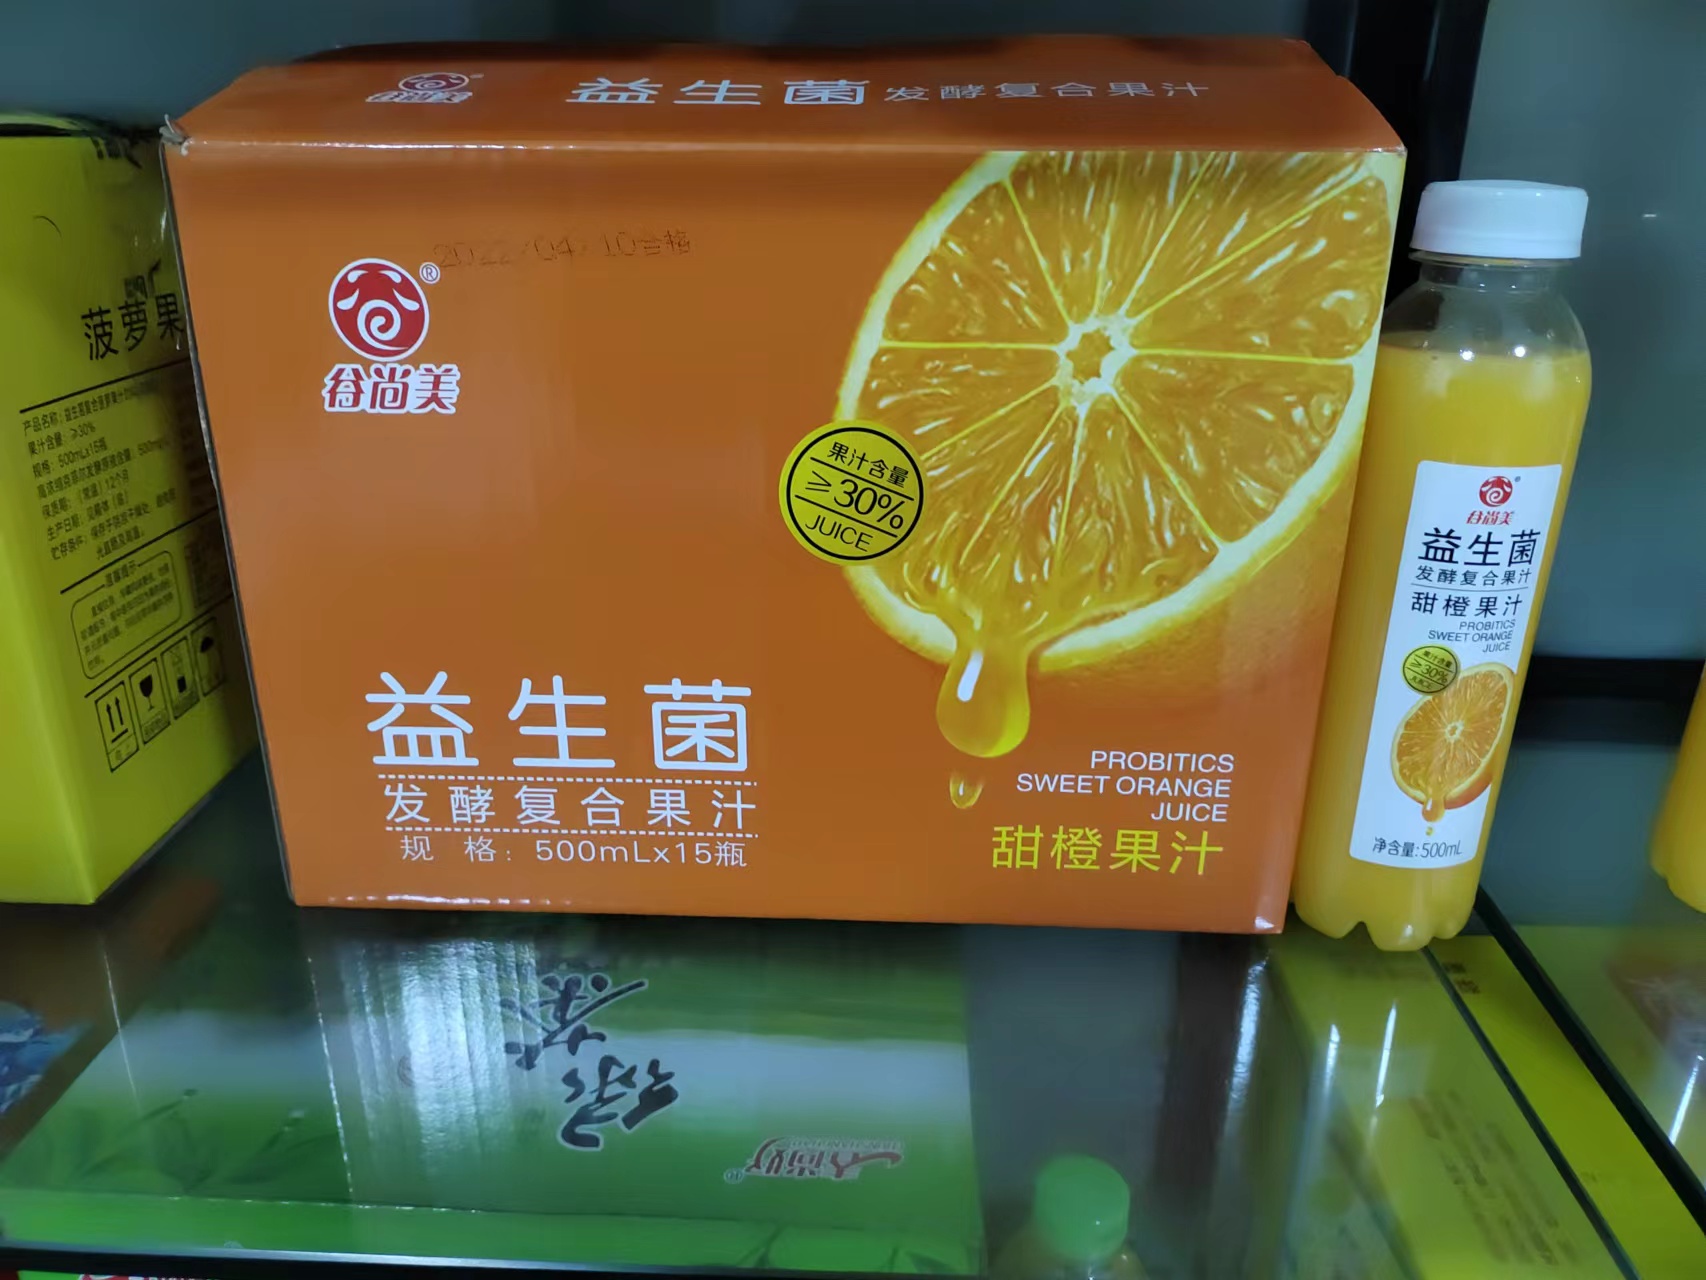 谷尚美益生菌发酵复合果汁甜橙果汁500ml×15瓶